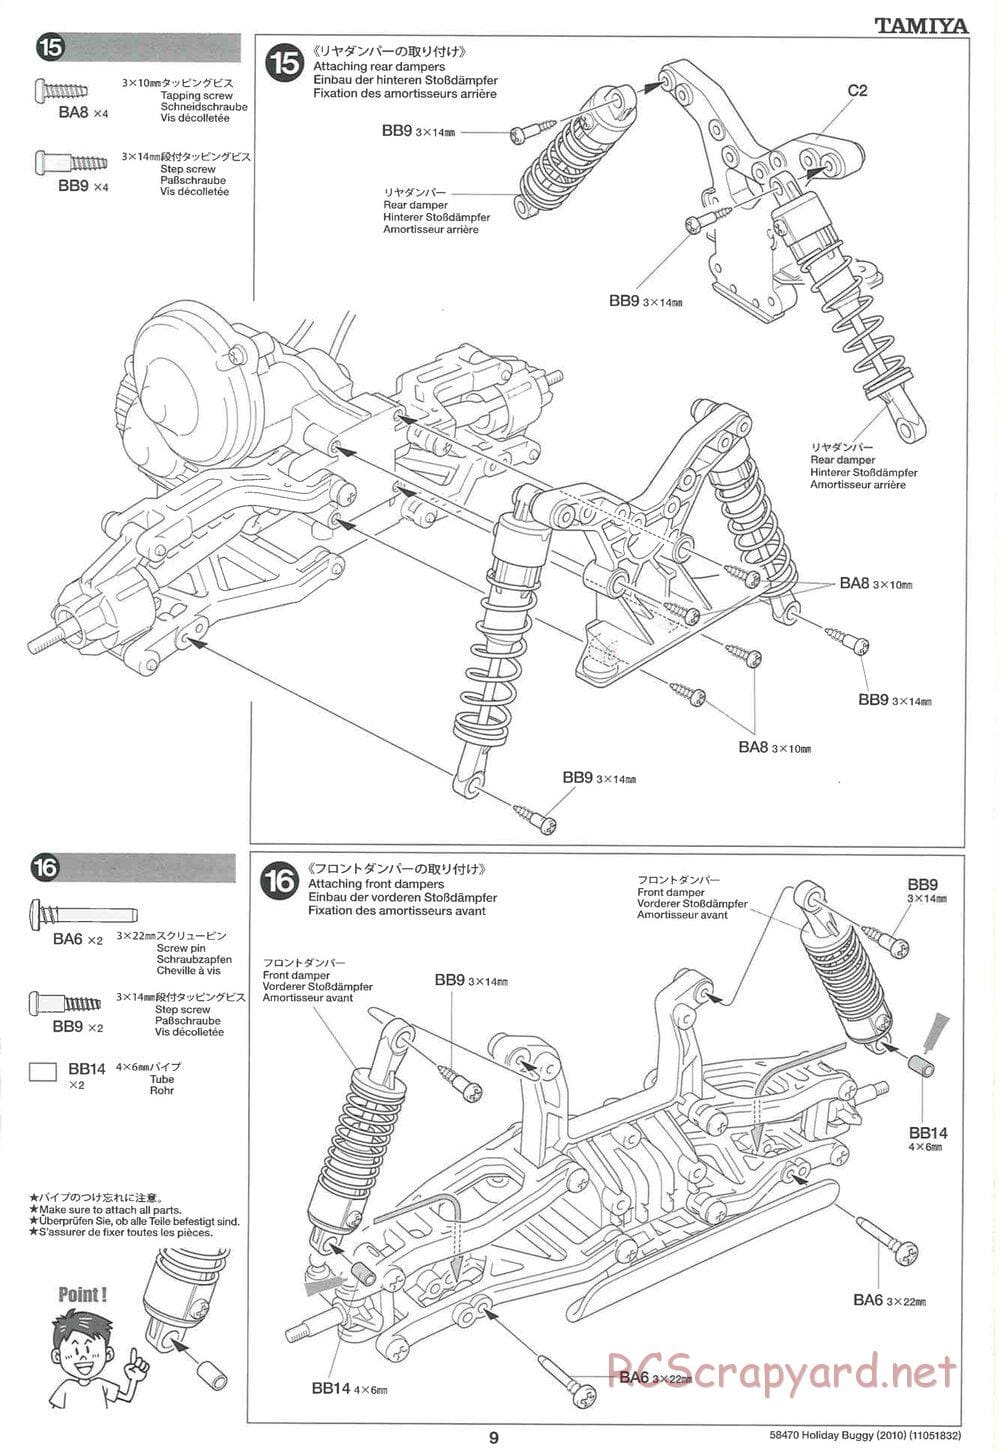 Tamiya - Holiday Buggy 2010 Chassis - Manual - Page 9